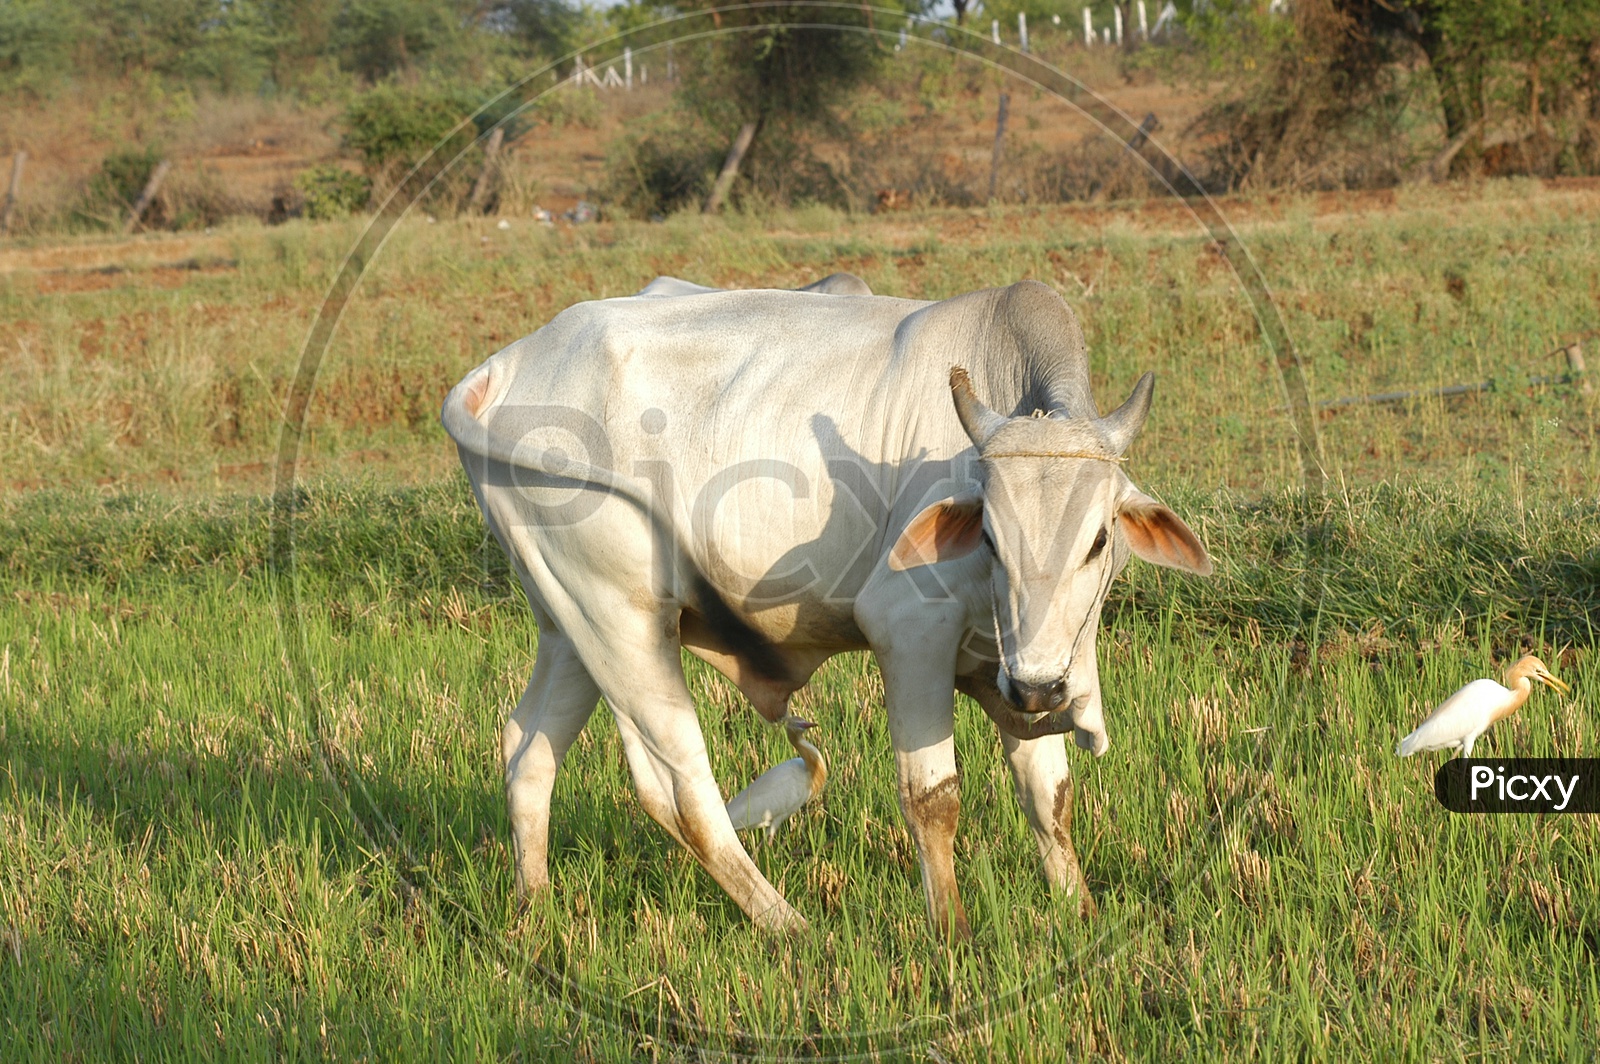 An ox in a farm